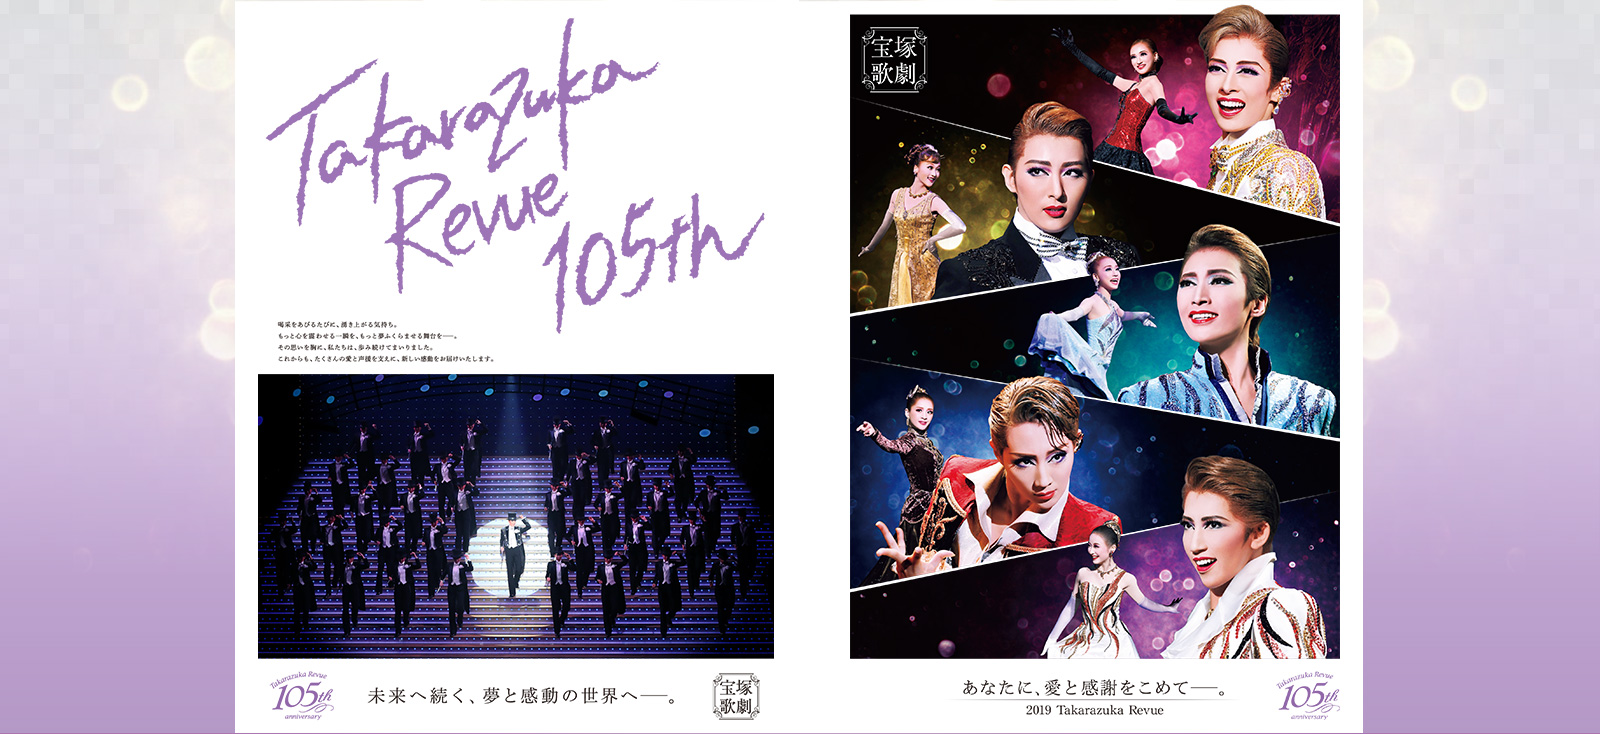 宝塚歌劇105周年記念 Special site